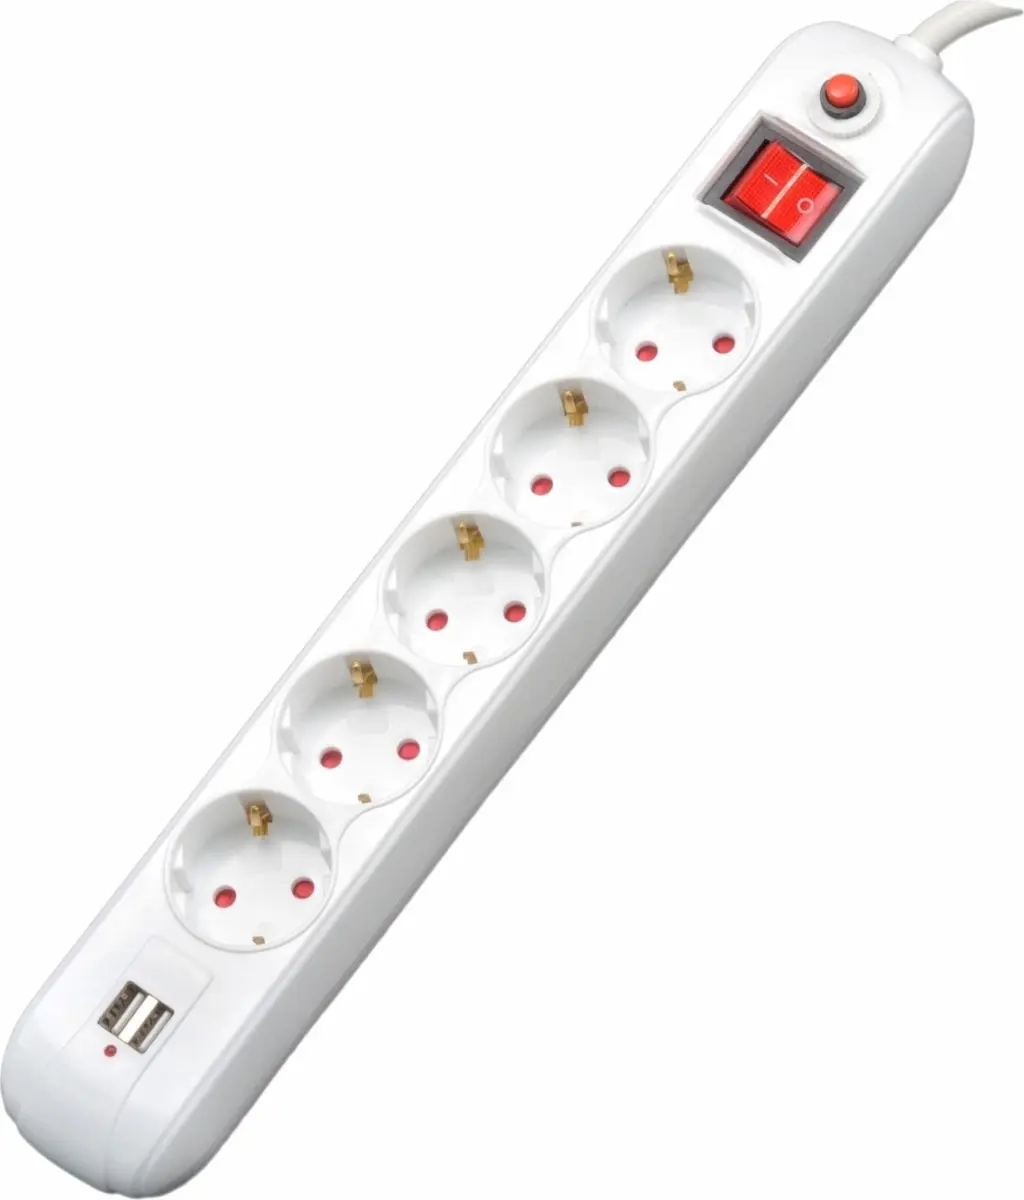 Prelungitor Spacer PP-5-18 USB, Schuko x 5, conectare prin Schuko (T), USB x 2, 1.8 m, 16 A, max. 3500W, protectie supratensiune, Alb